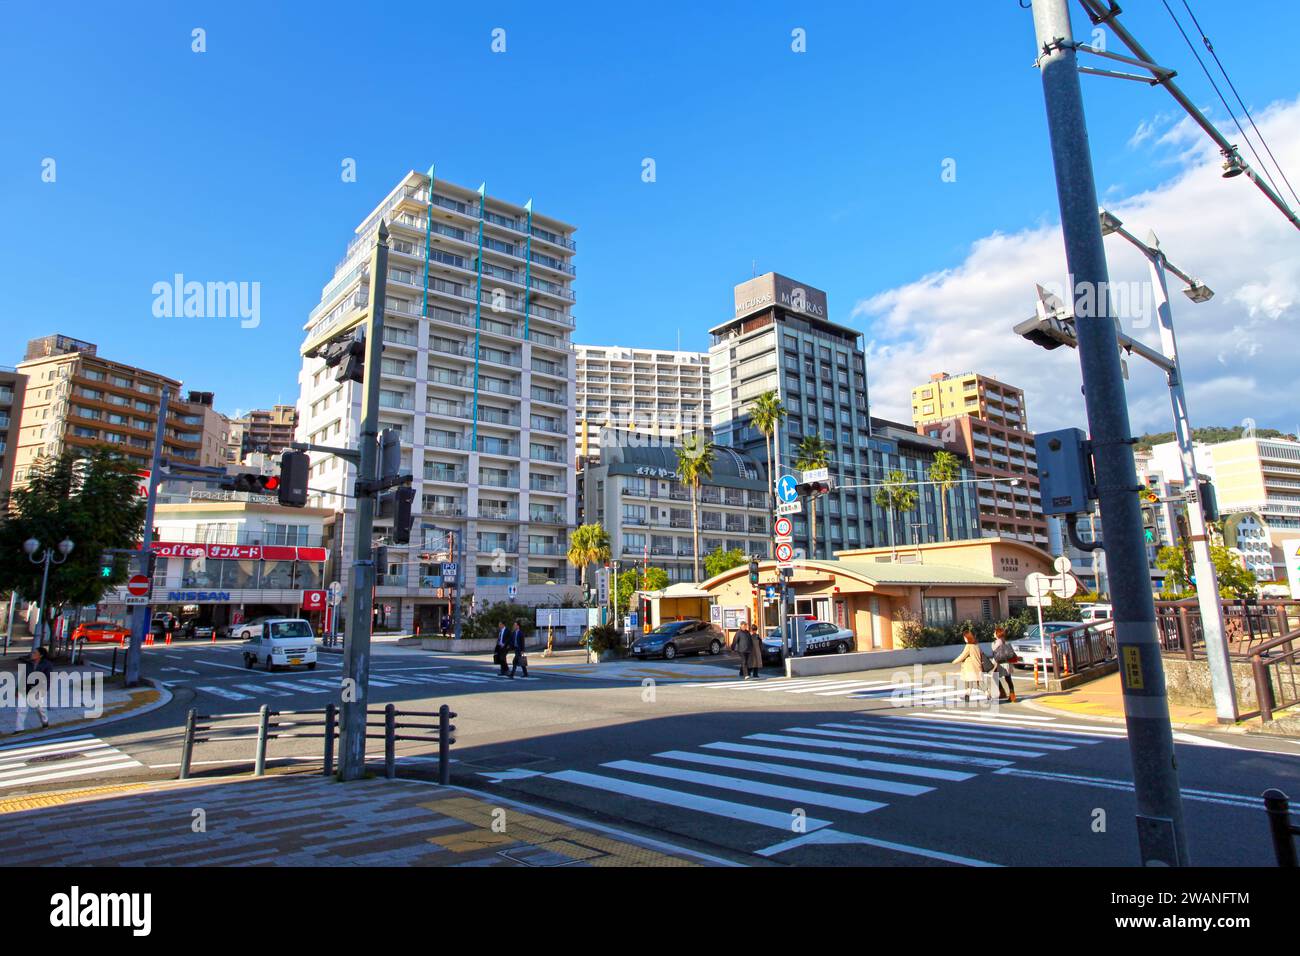 Città di Atami sulla penisola di Izu nella prefettura di Shizuopka, Giappone. Preso in una giornata di sole con un cielo blu e quasi nessuna gente intorno. Foto Stock